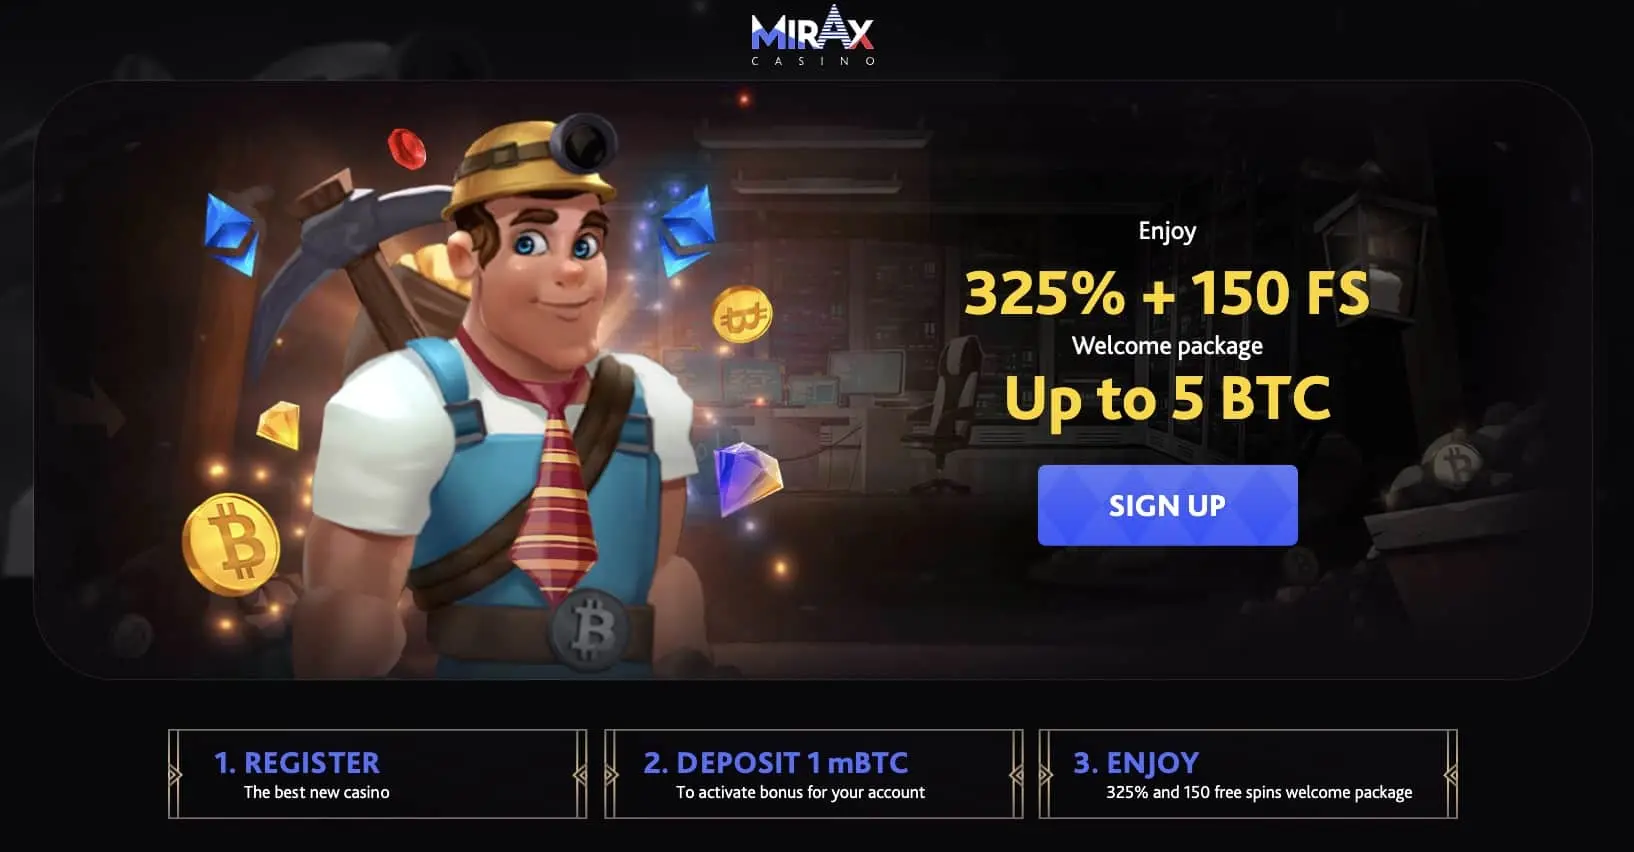 Mirax casino homepage